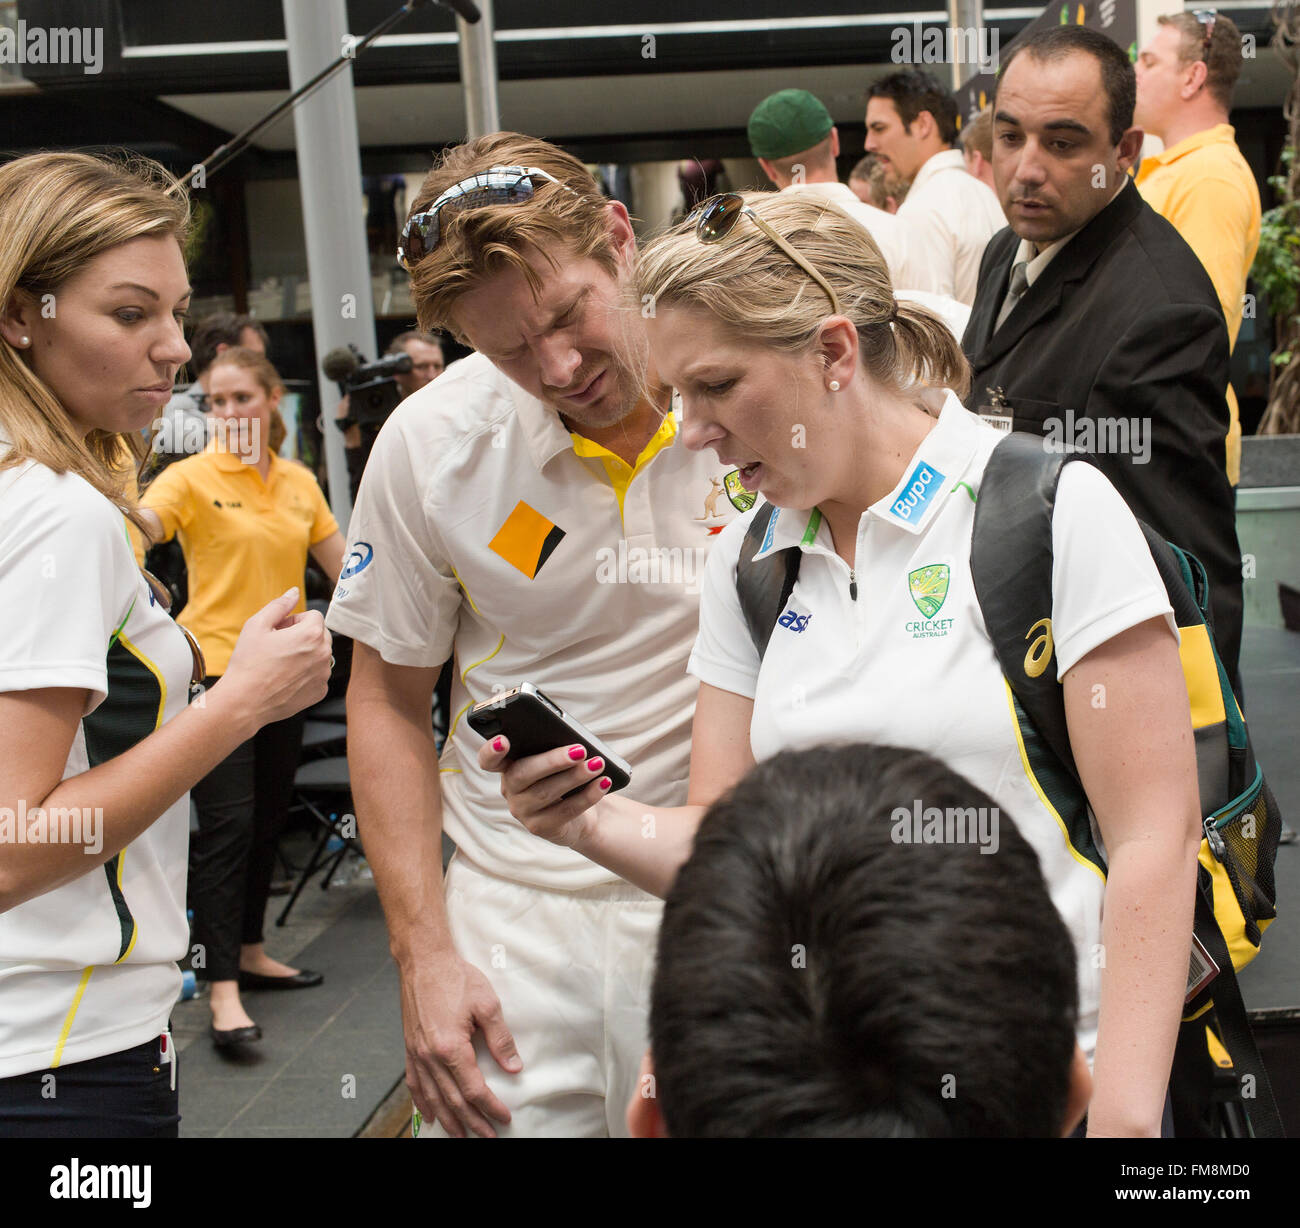 L'équipe australienne de cricket en Australie Brisbane avec les médias et supportrice looking at phone Banque D'Images